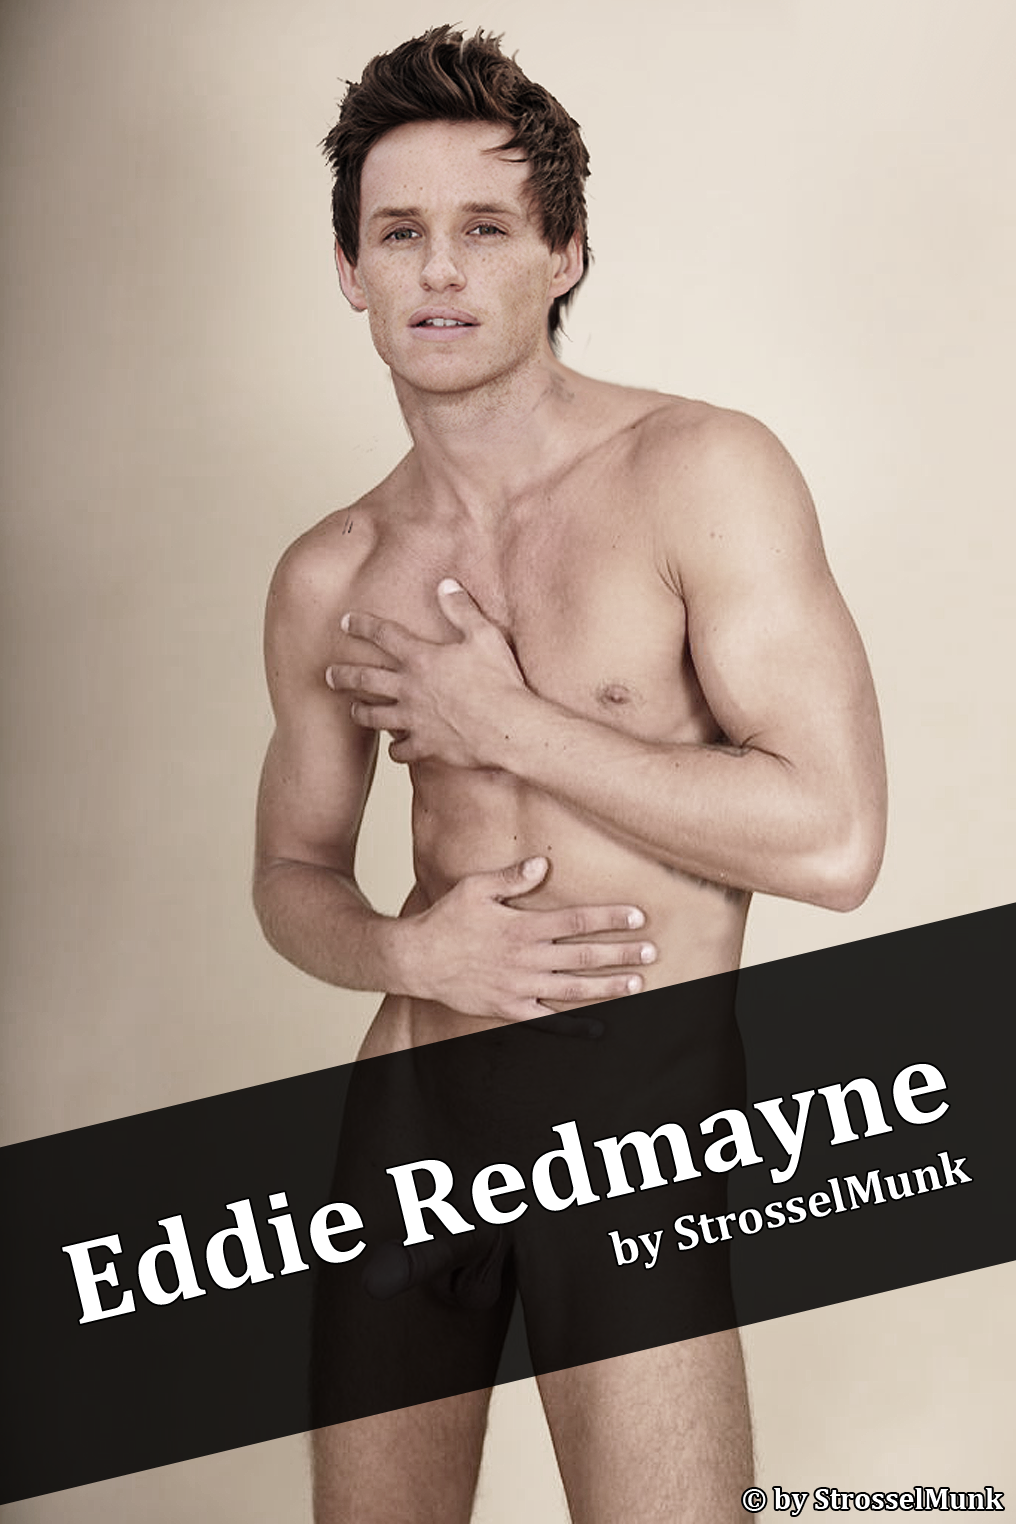 EddieRedmayne[1] - kopia